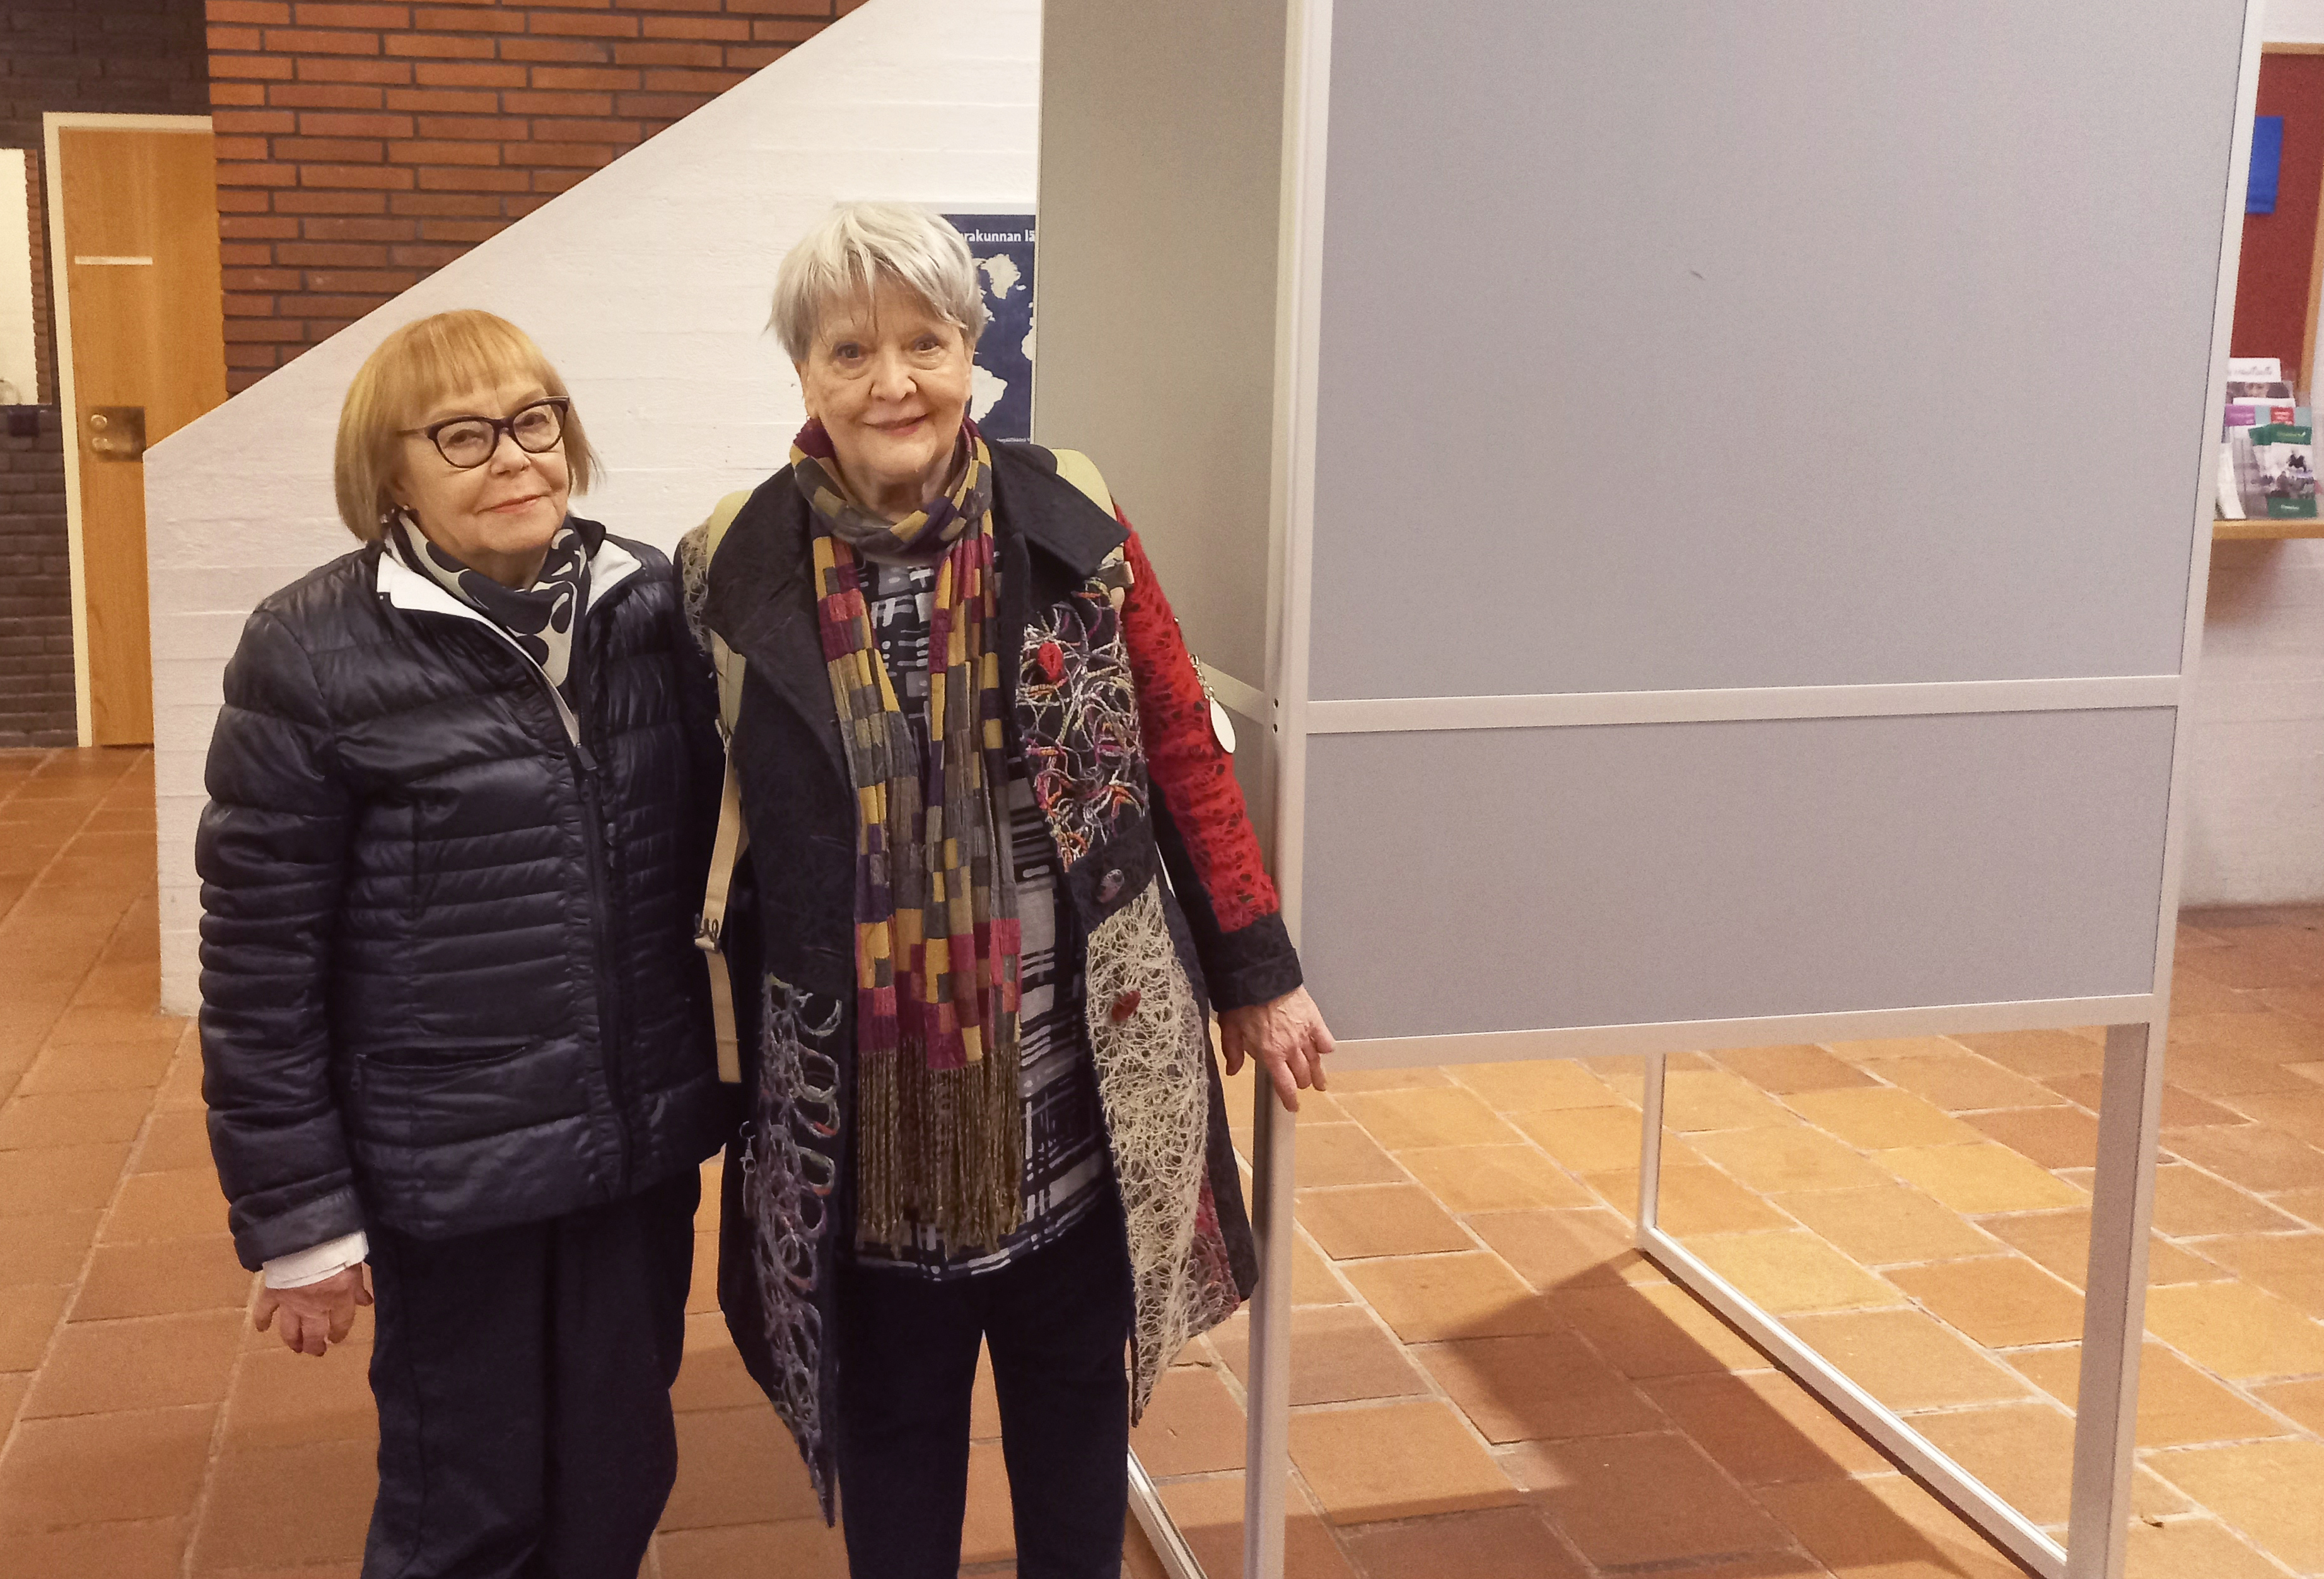 Ulla Törn ja Terttu Välikangas seisovat äänestyskopin vieressä ja katsovat kameraan.